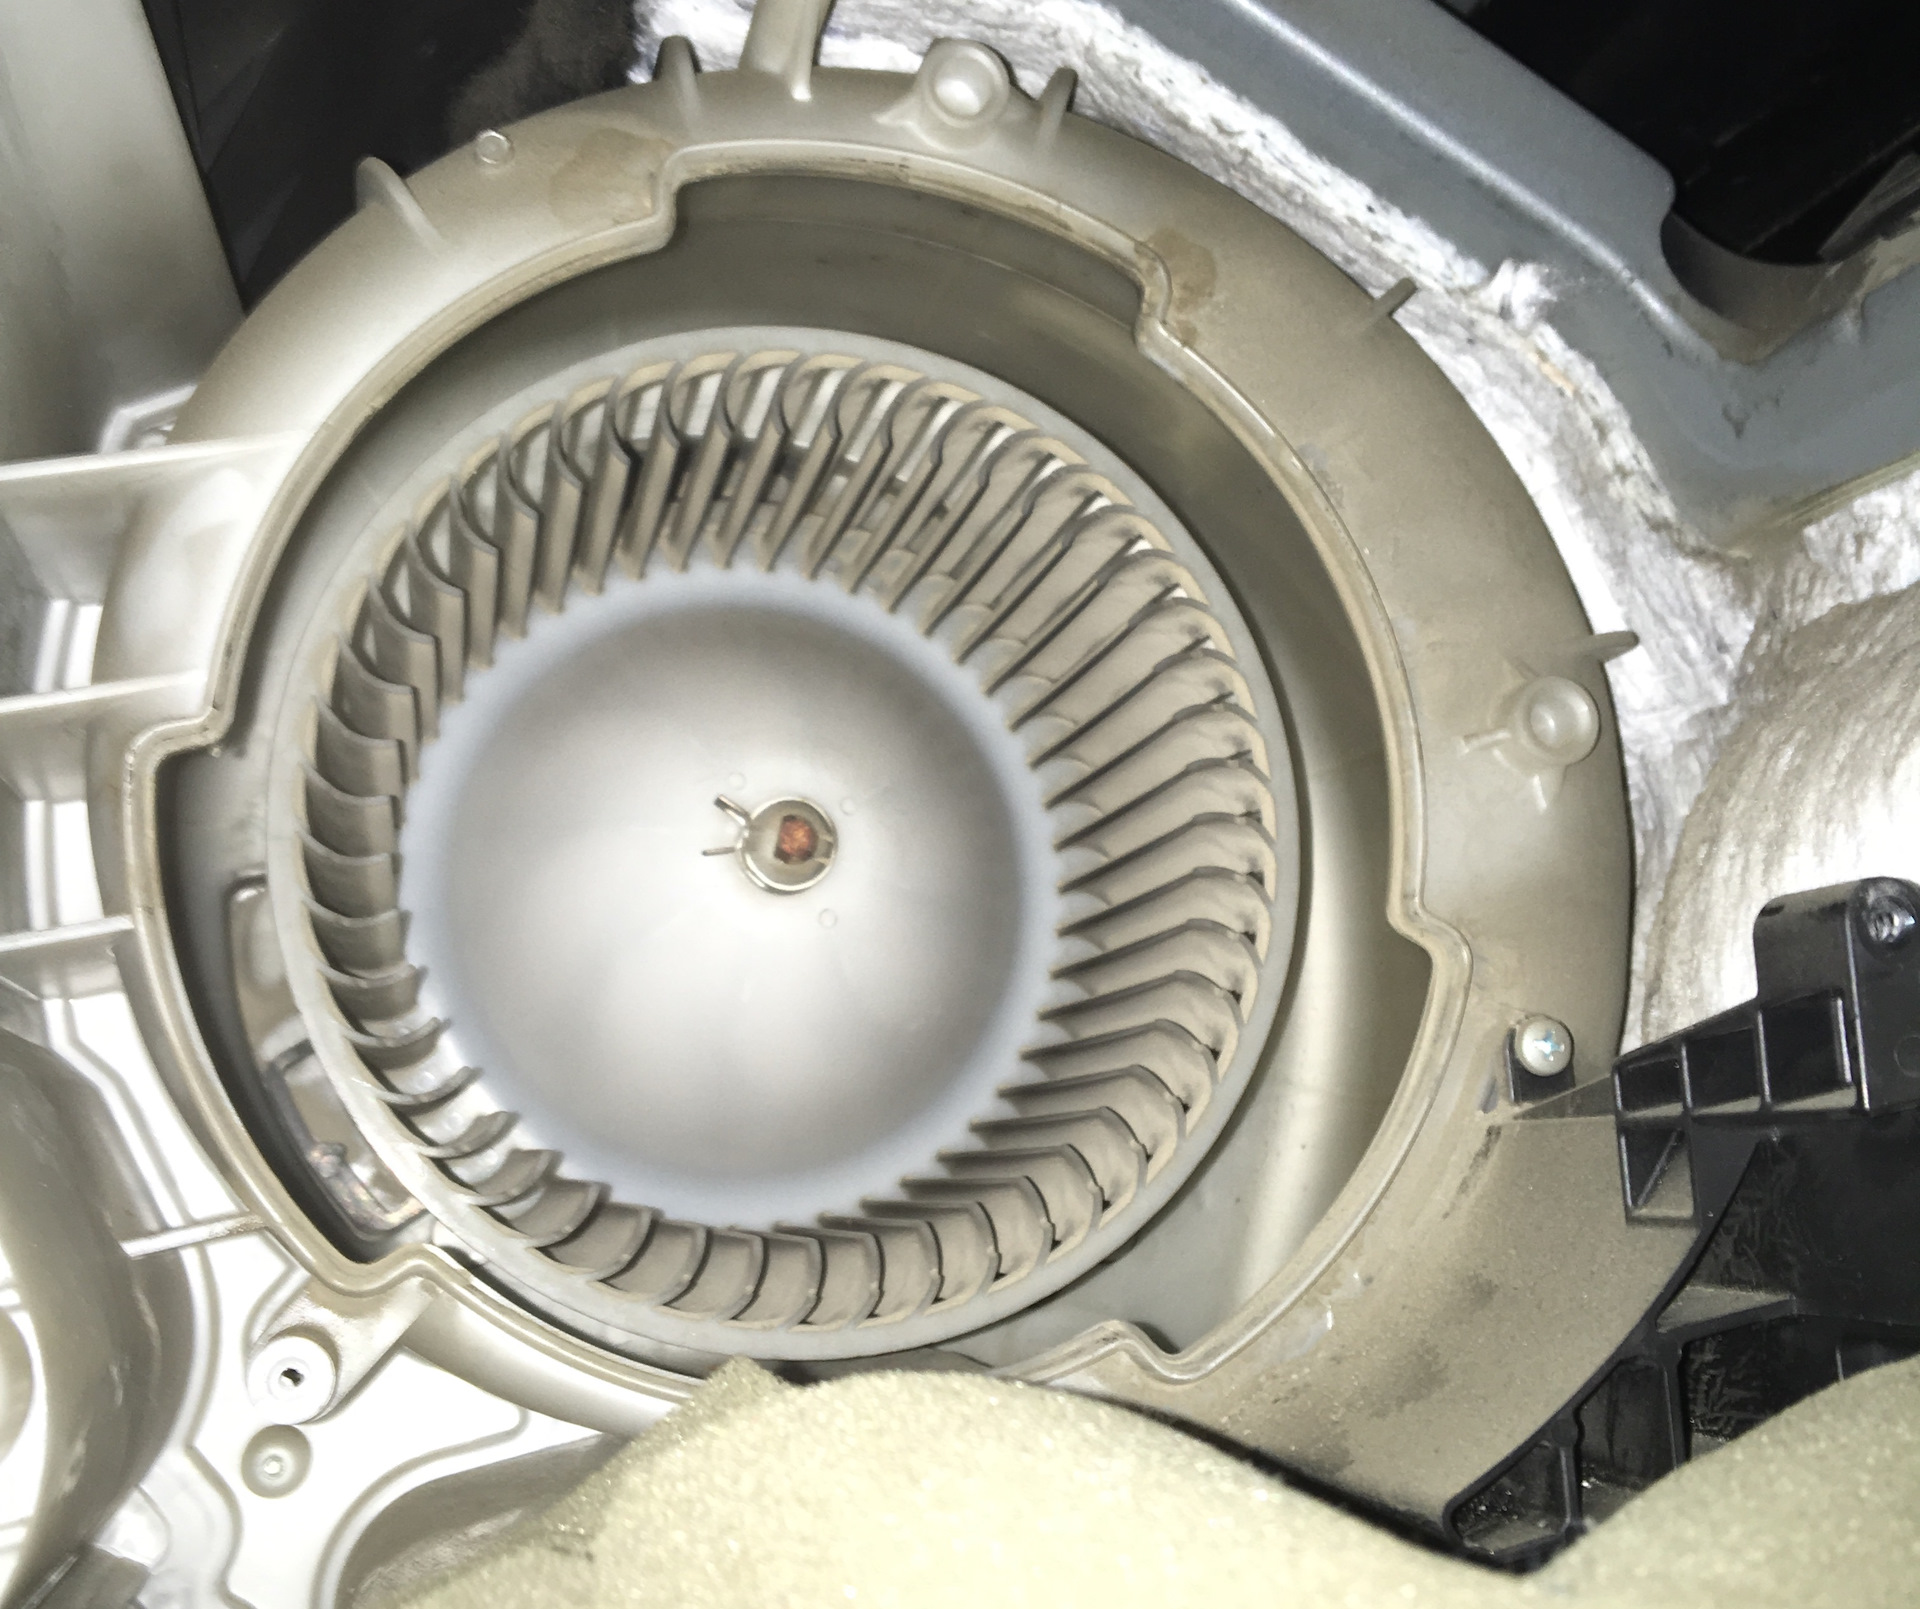 Мотор печки Мазда 3 BK. Фишка мотора отопителя Мазда 3. Mazda CX-5 2020 моторчик печки отопителя. Подшипники электродвигателя отопителя Мазда 3. Печка мазда 3 бк